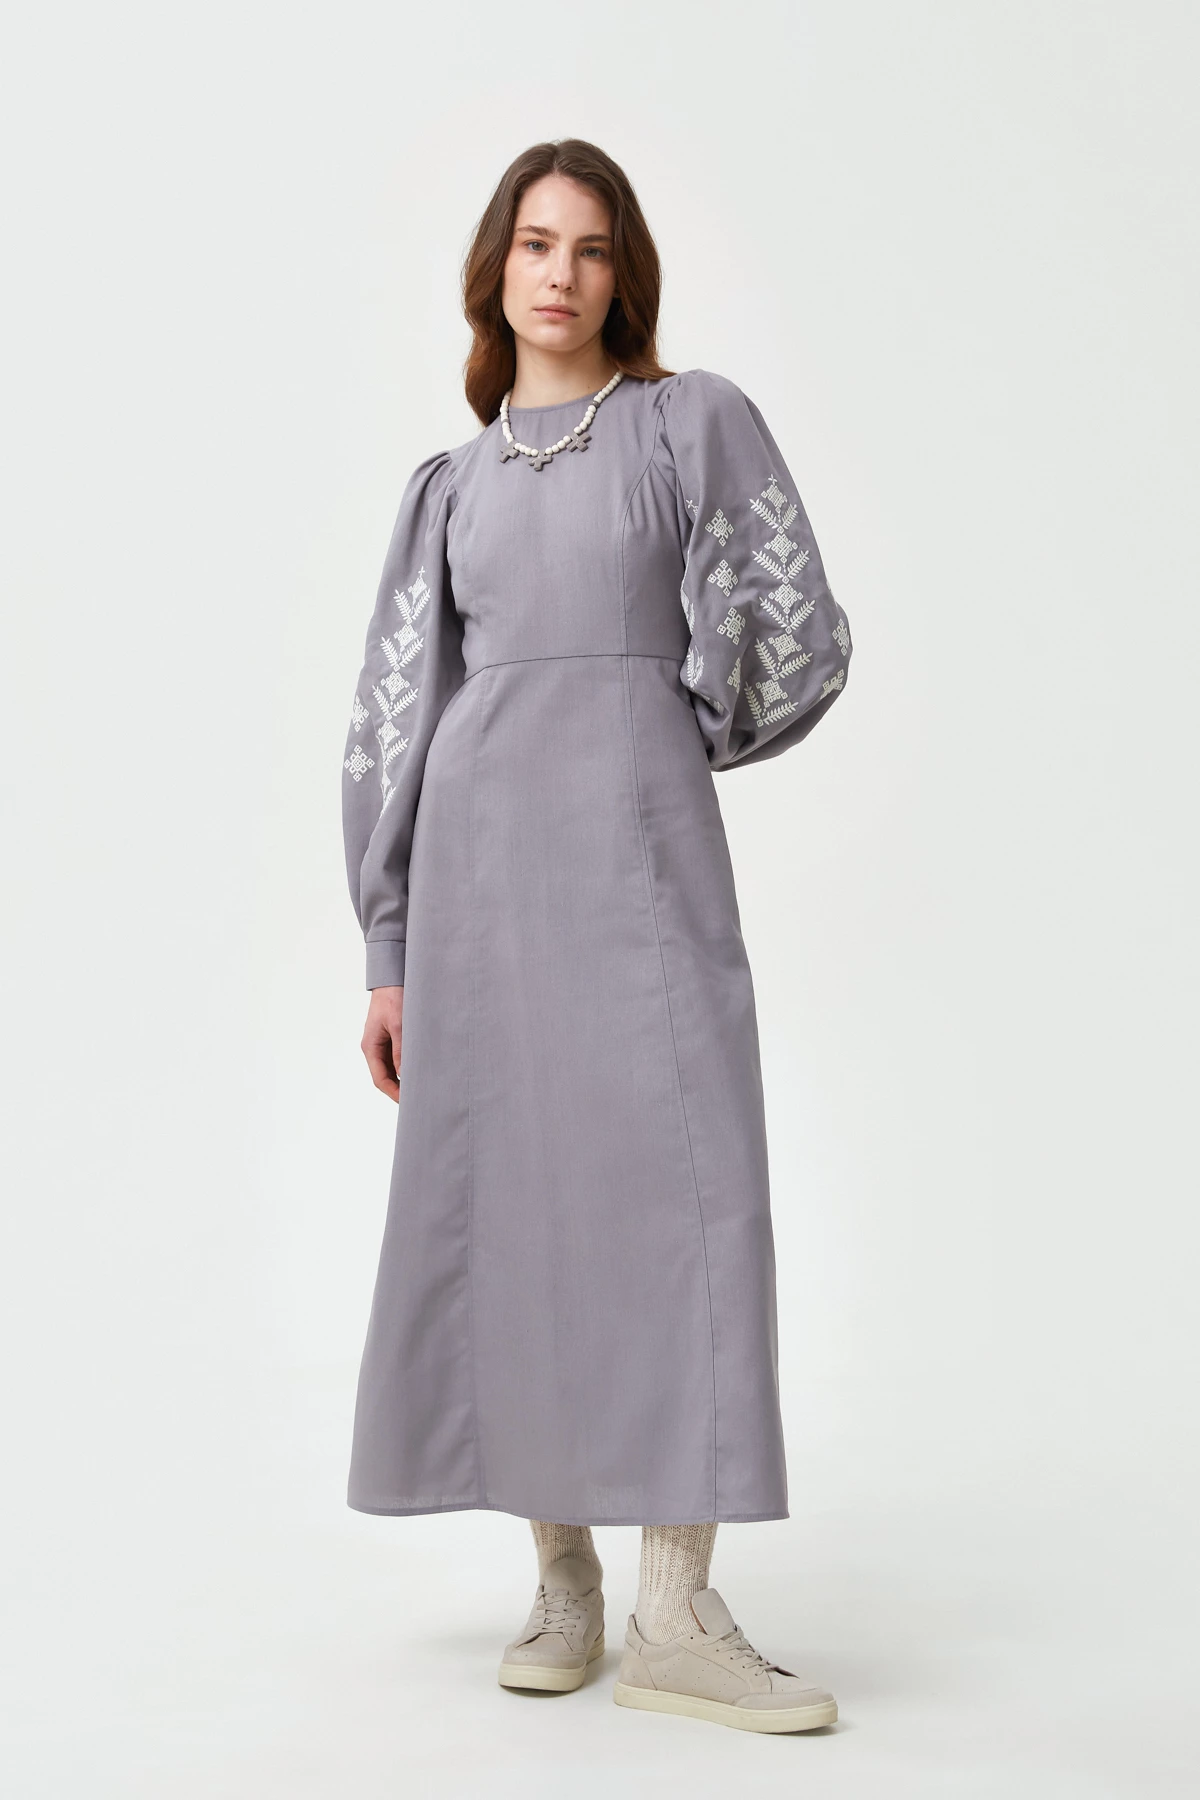 Сіра вишита сукня в орнамент ромби з льоном, фото 3